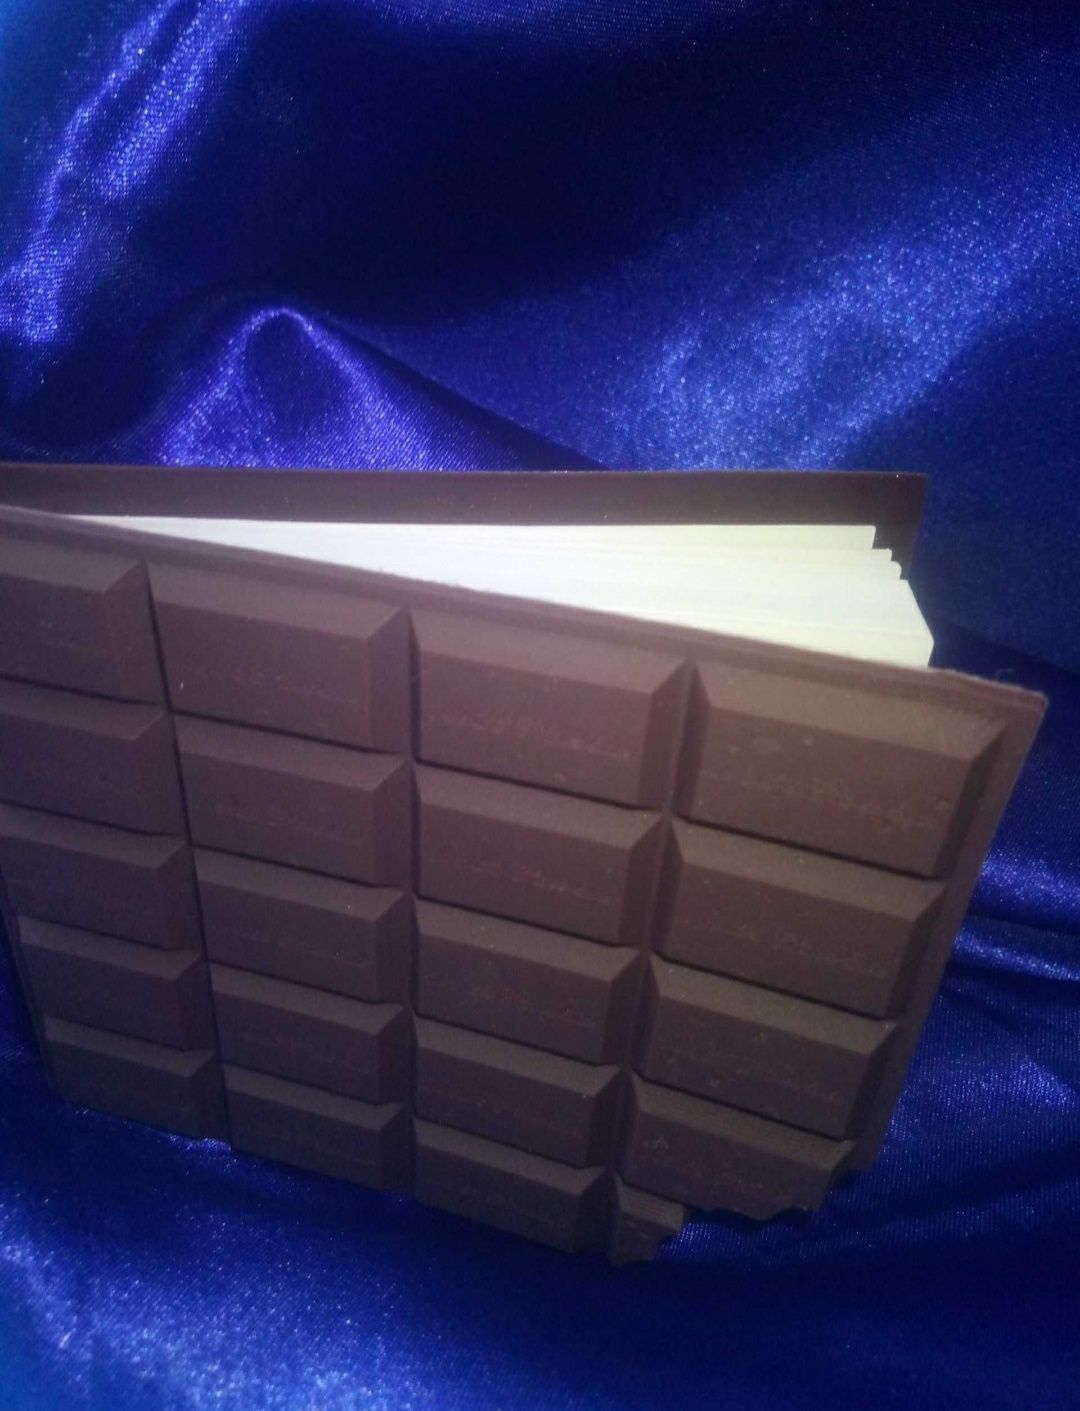 Оригинальный подарок Блокнот, записник, ароматизированный шоколад